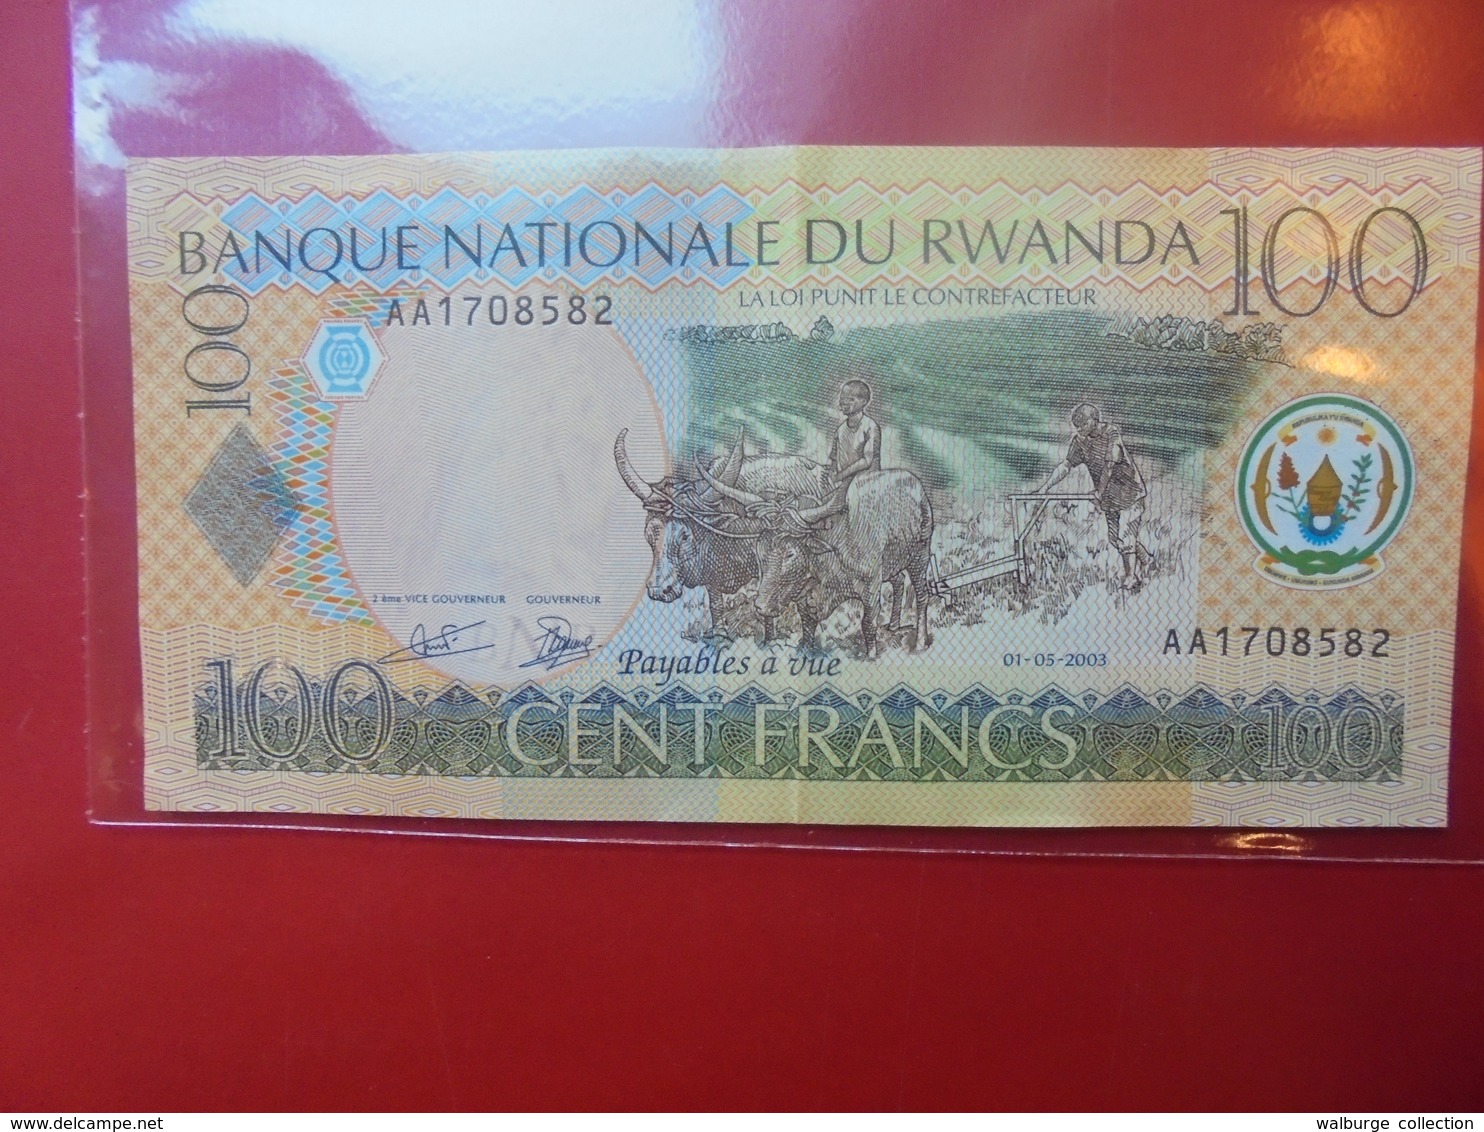 RWANDA 100 FRANCS 2003 CIRCULER - Rwanda